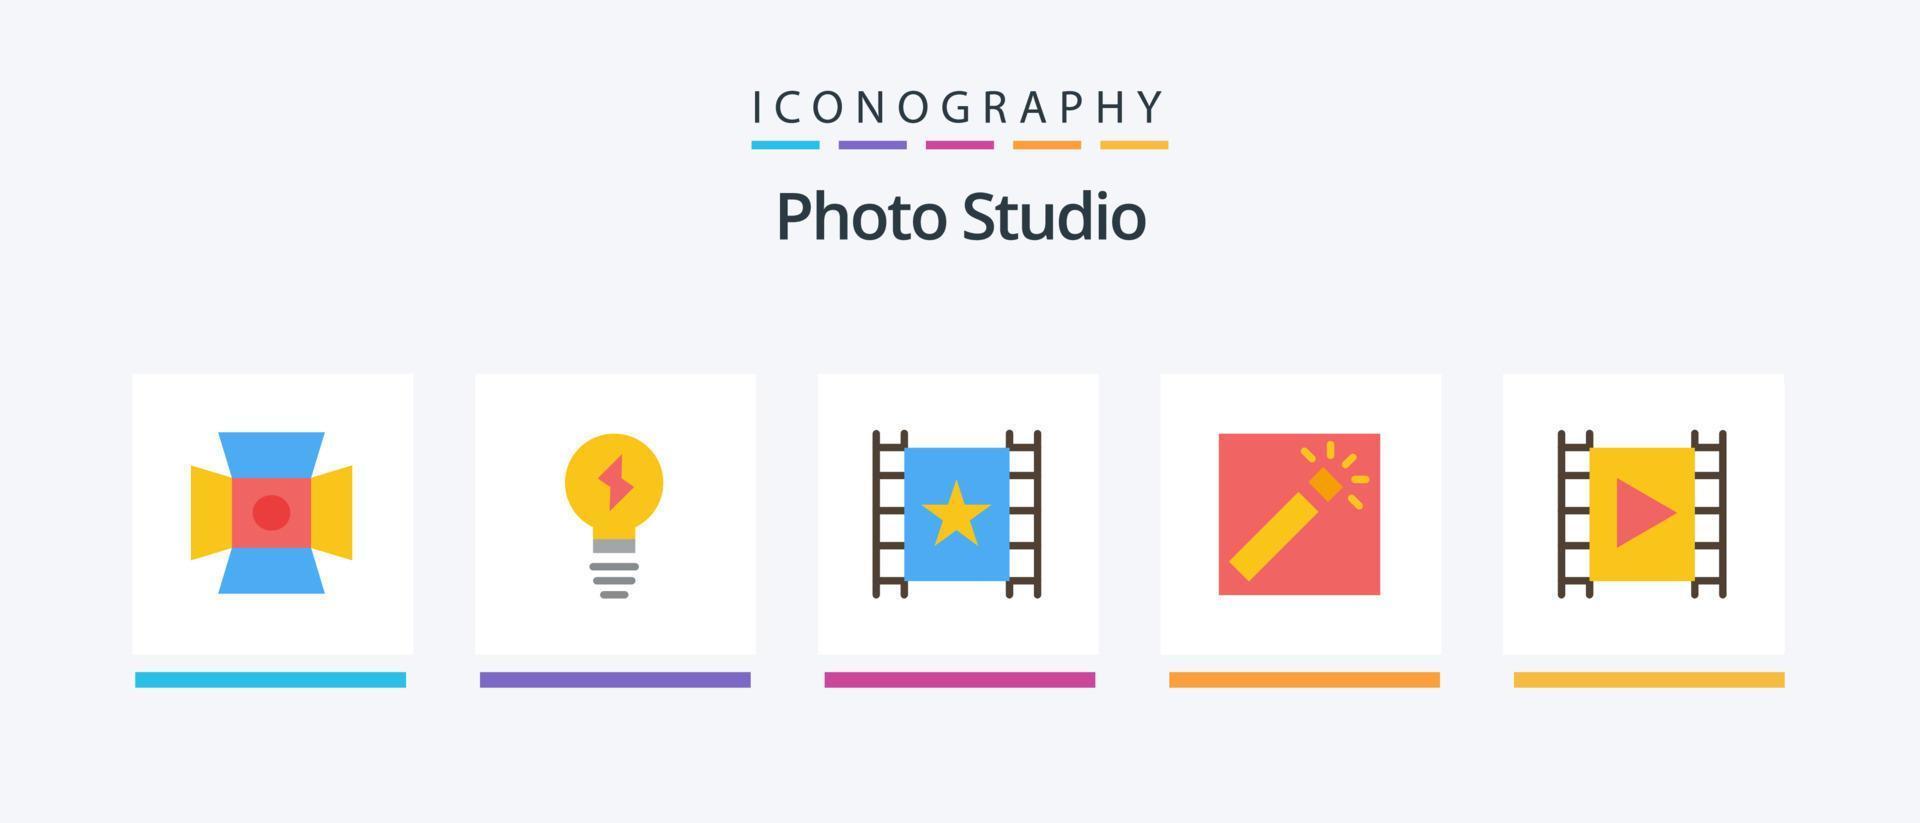 foto studio vlak 5 icoon pak inclusief multimediaal. media. speler. retoucheren. fotograaf. creatief pictogrammen ontwerp vector